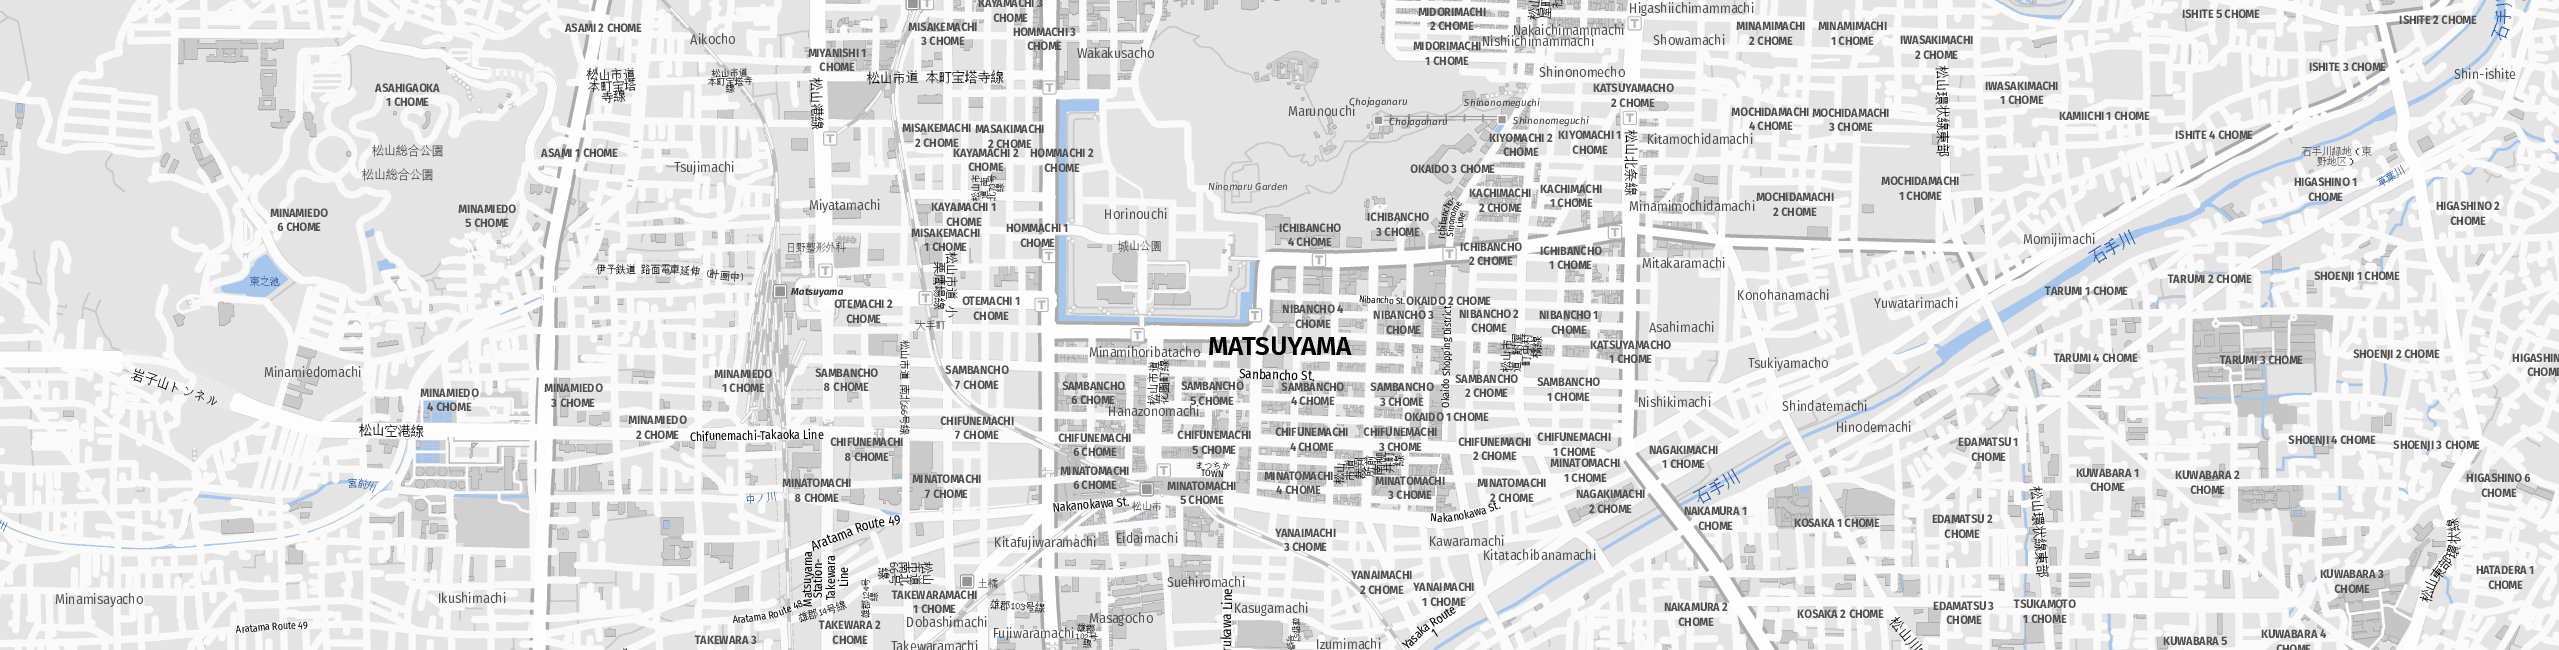 Stadtplan Matsuyama zum Downloaden.